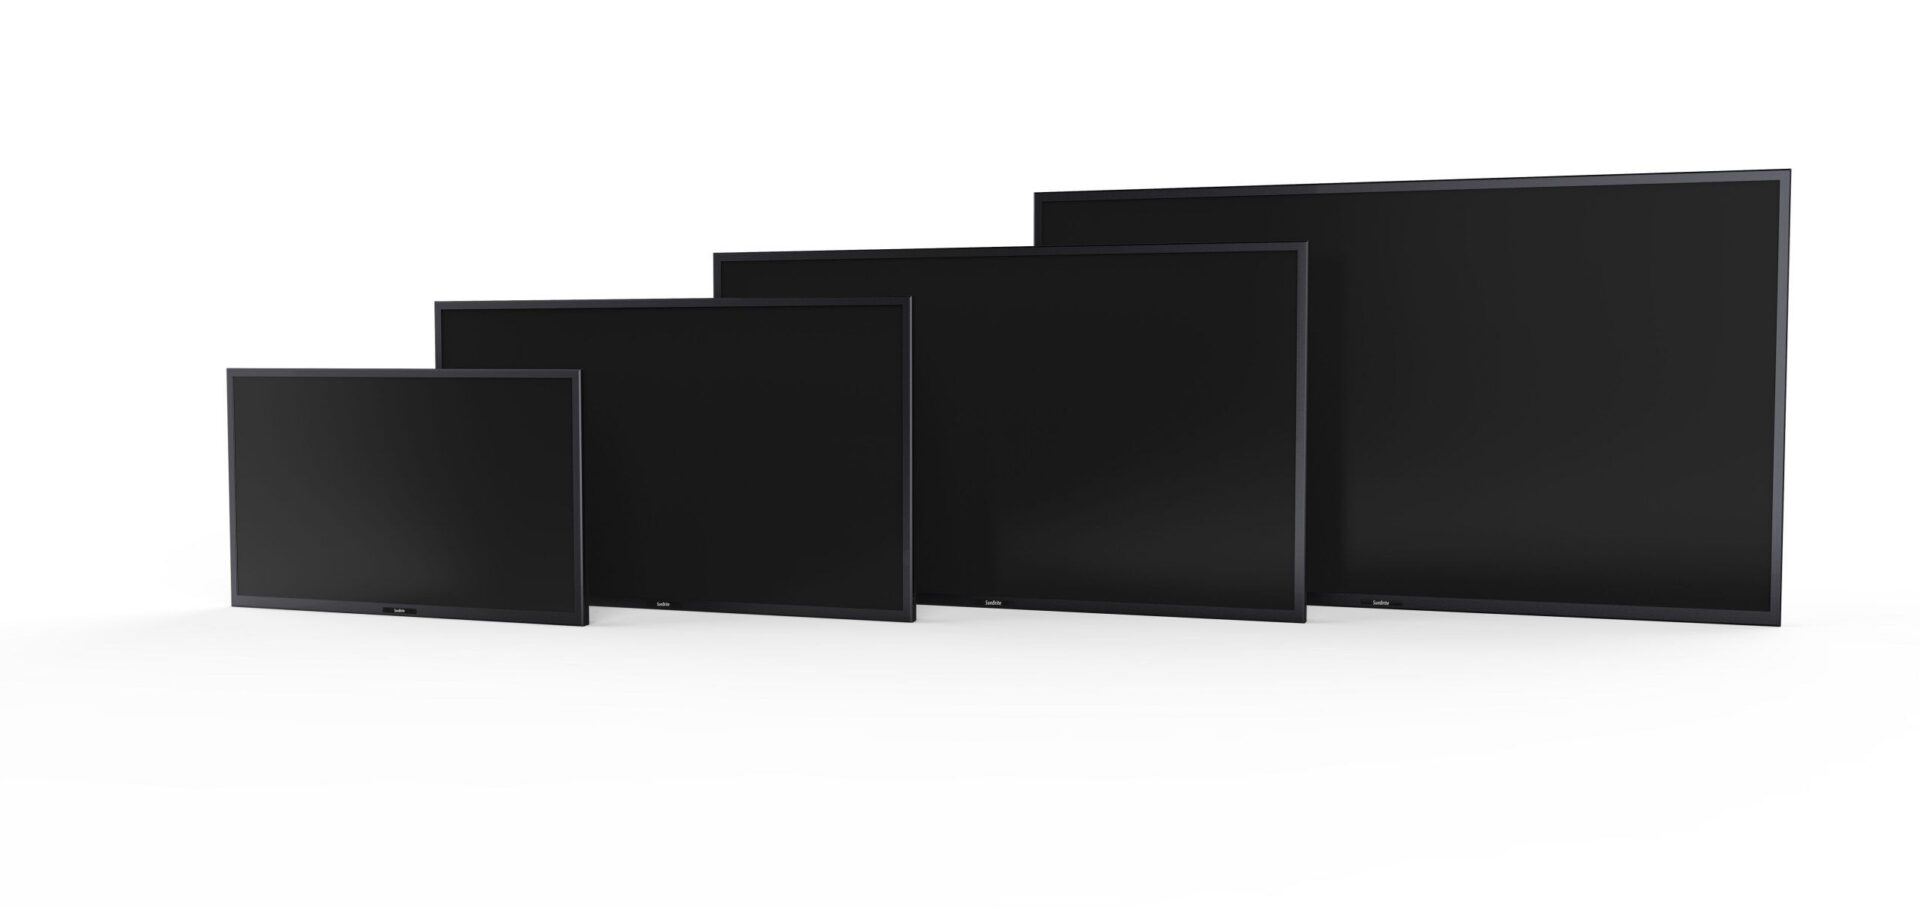 SunBrite| Veranda Series Outdoor 4K UHD TVs with HDR